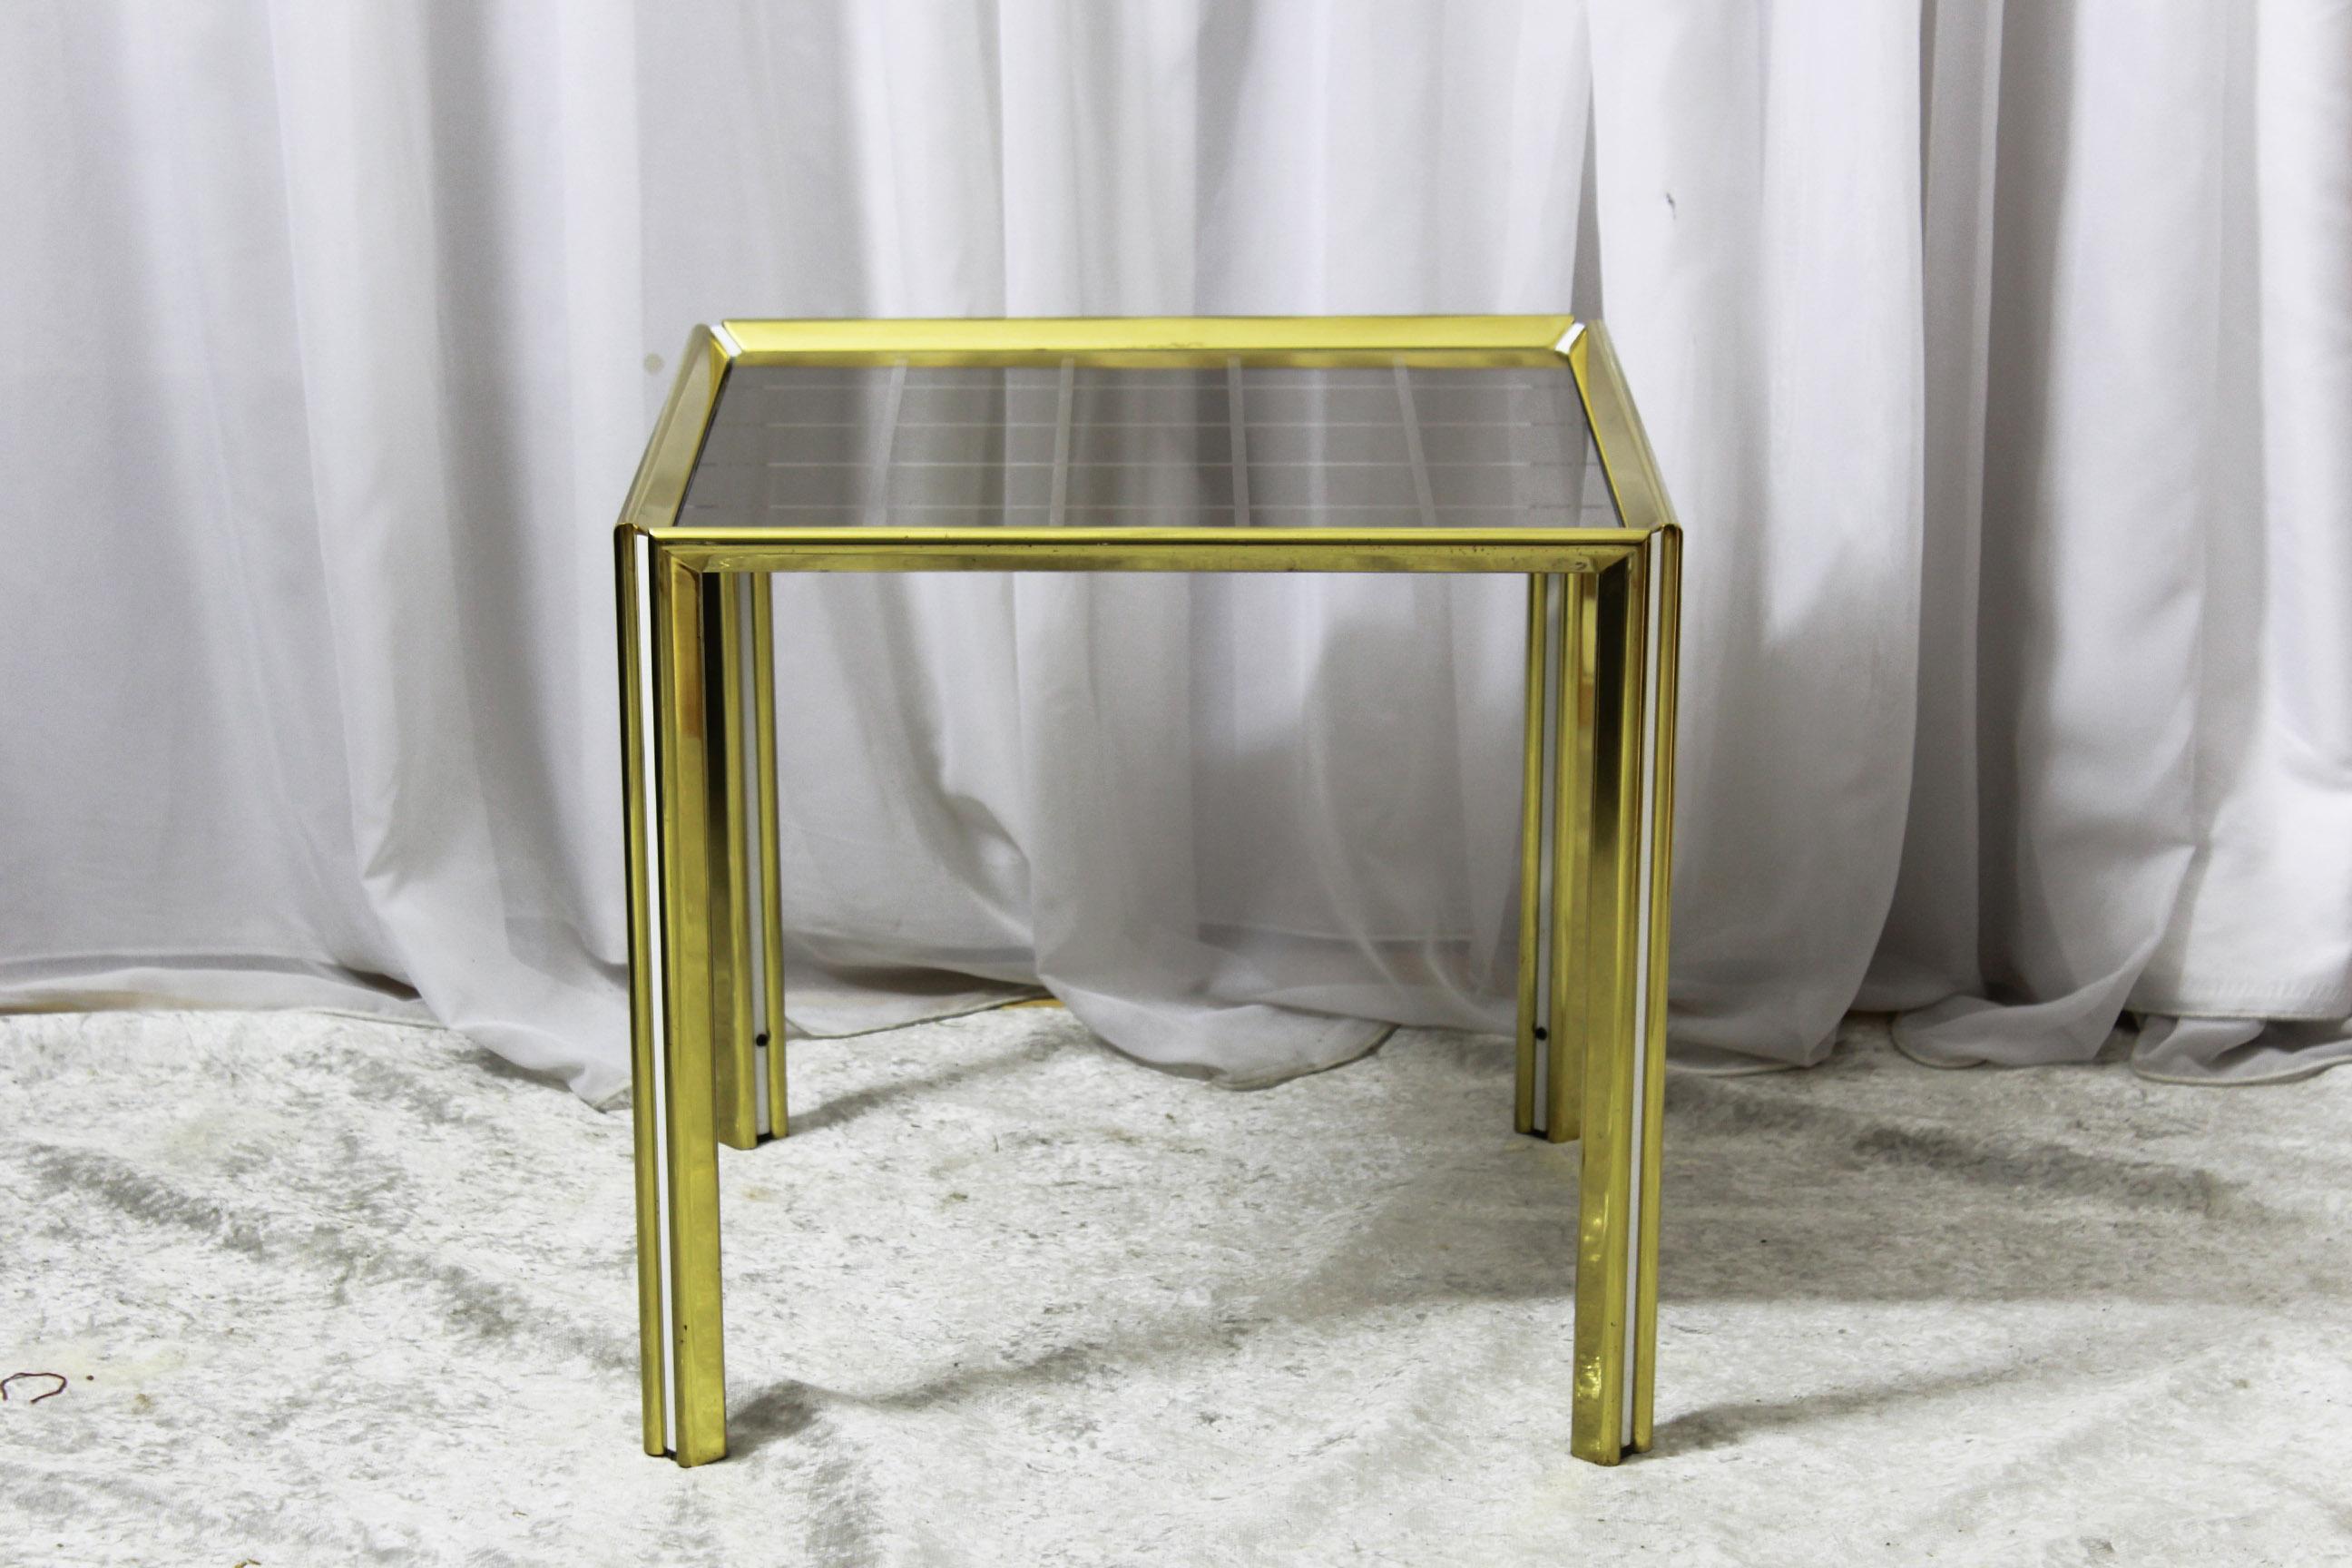 Table basse vintage fabriquée en Italie dans les années 1970. Structure en fer doré avec décoration raffinée et géométrique sur le dessus.
En très bon état avec seulement quelques signes du temps sur la structure de la verge d'or. Le plateau en